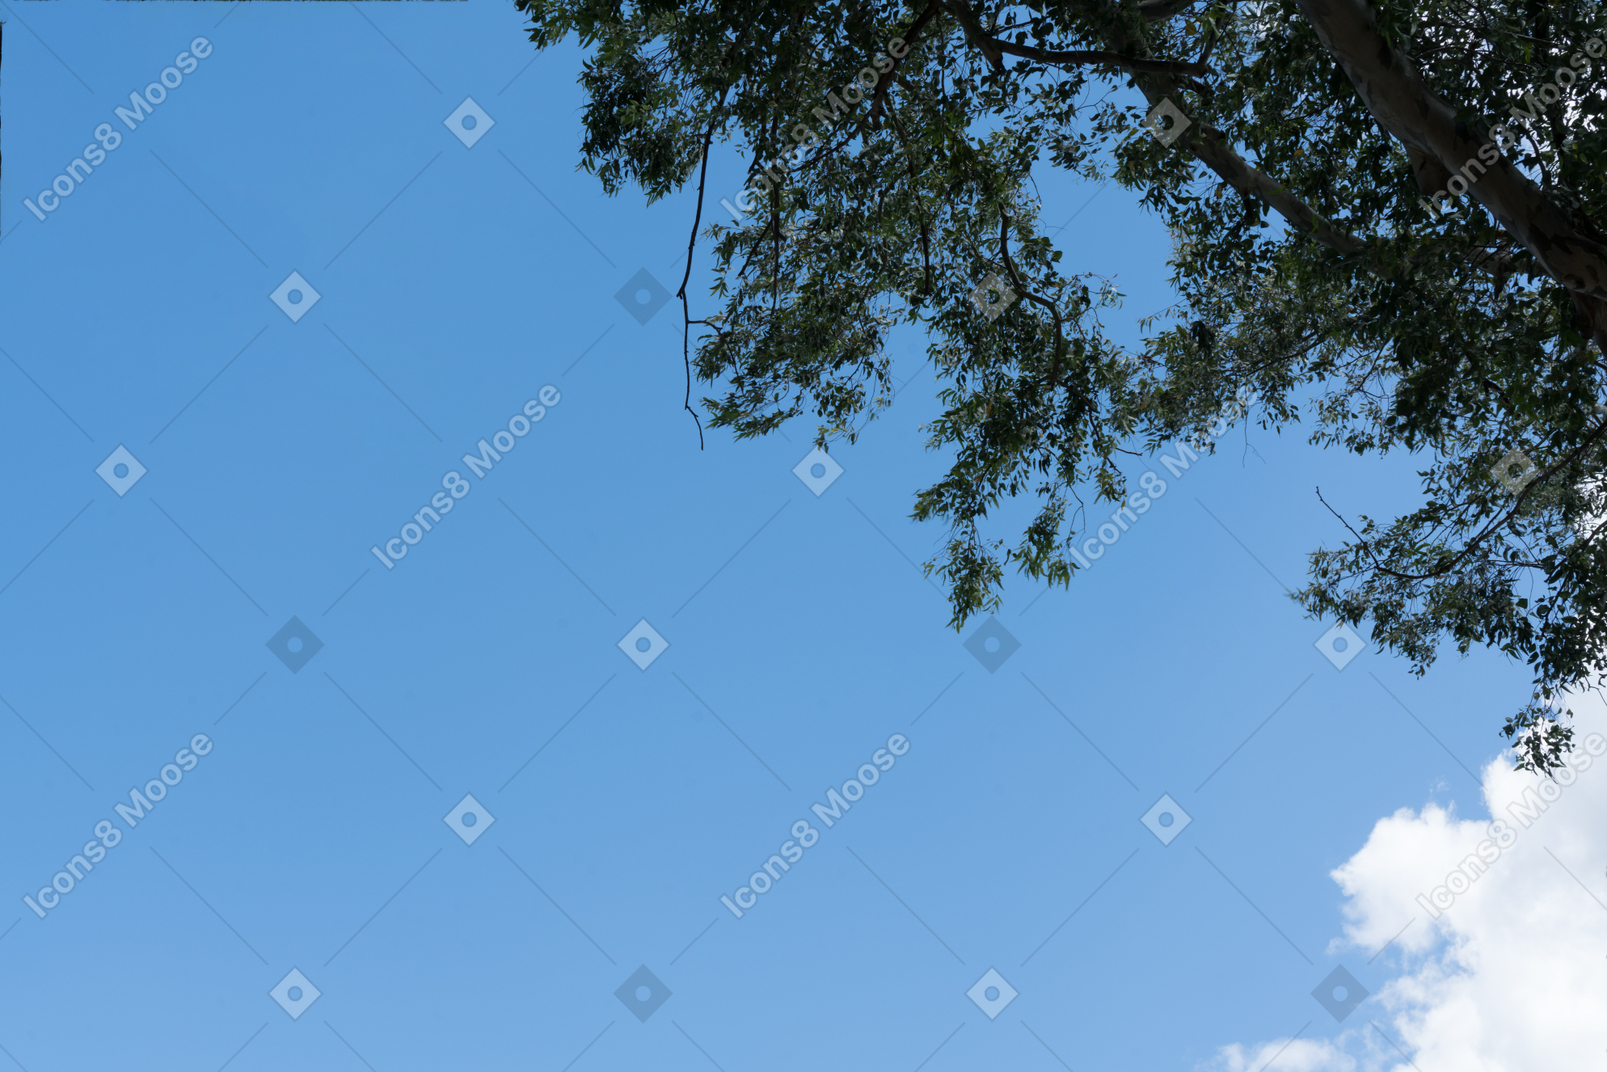 La vista del cielo y el árbol arriba